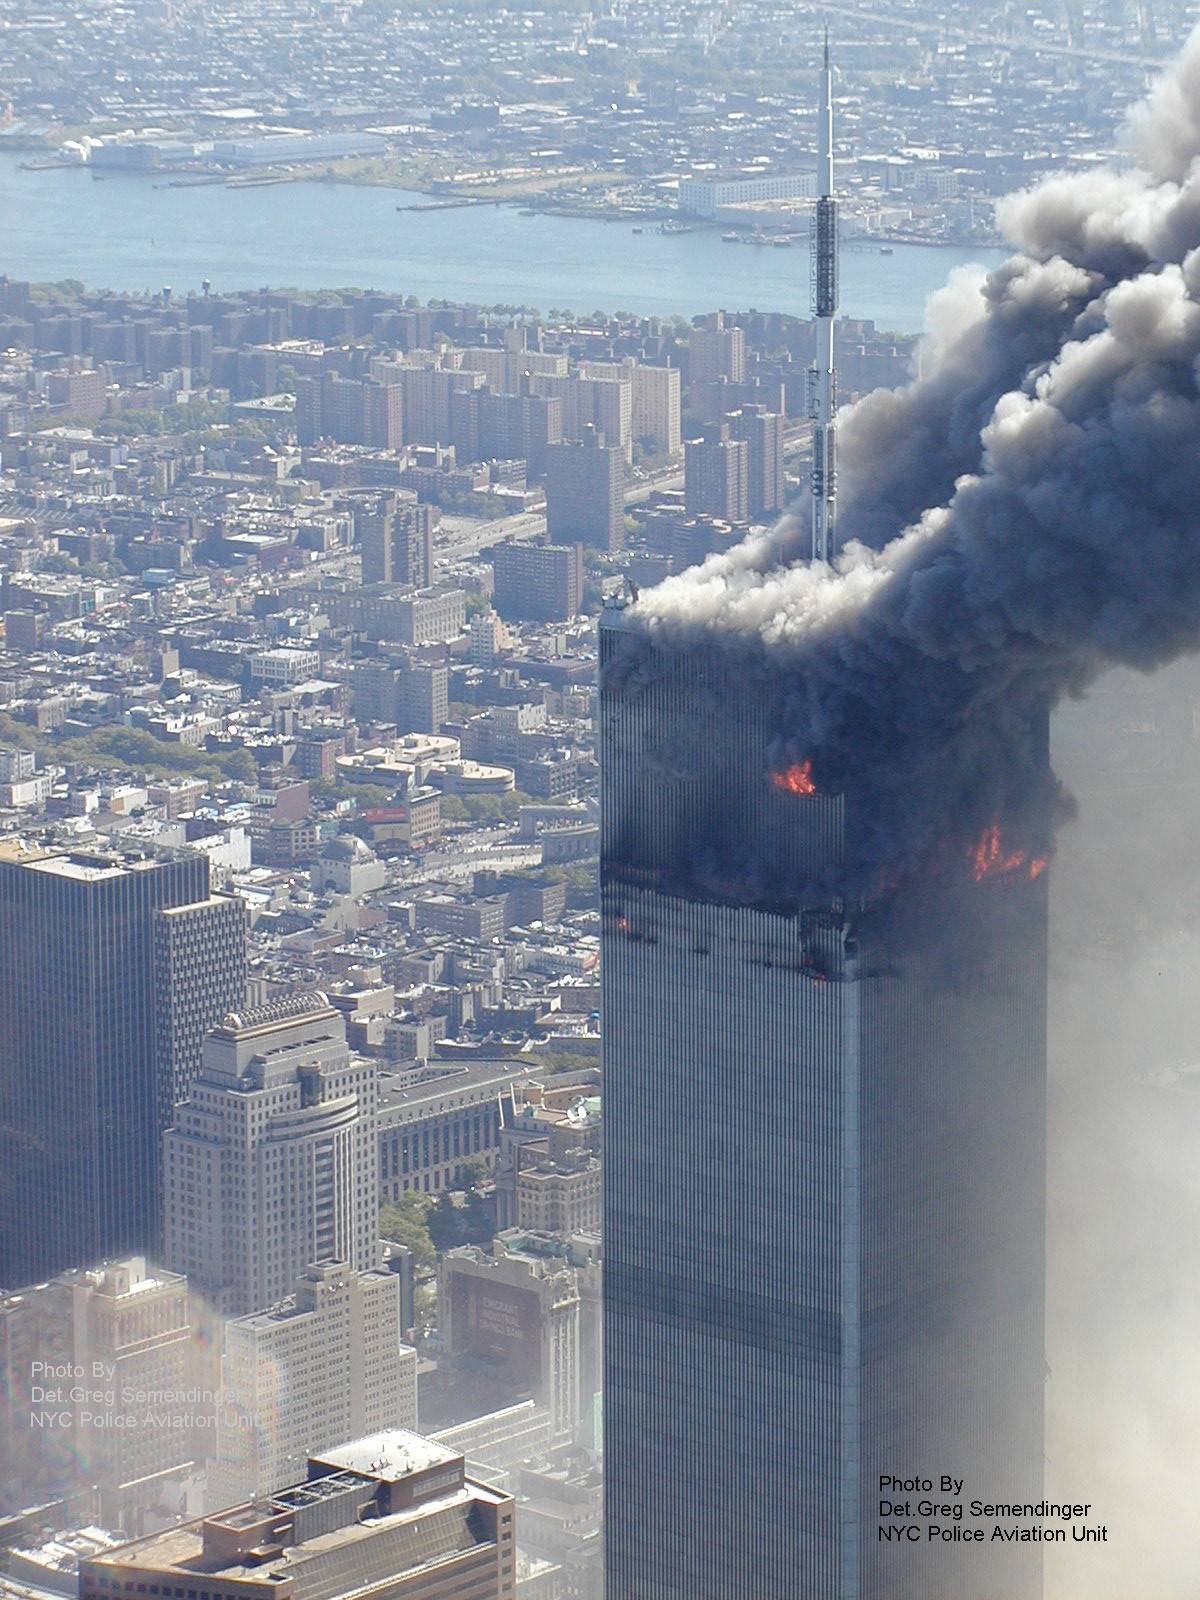 Близнецы сколько этажей. Башни-Близнецы 11 сентября 2001. Северная башня ВТЦ 11 сентября. ВТЦ Нью-Йорк башни Близнецы. Всемирный торговый центр в Нью-Йорке 11 сентября.